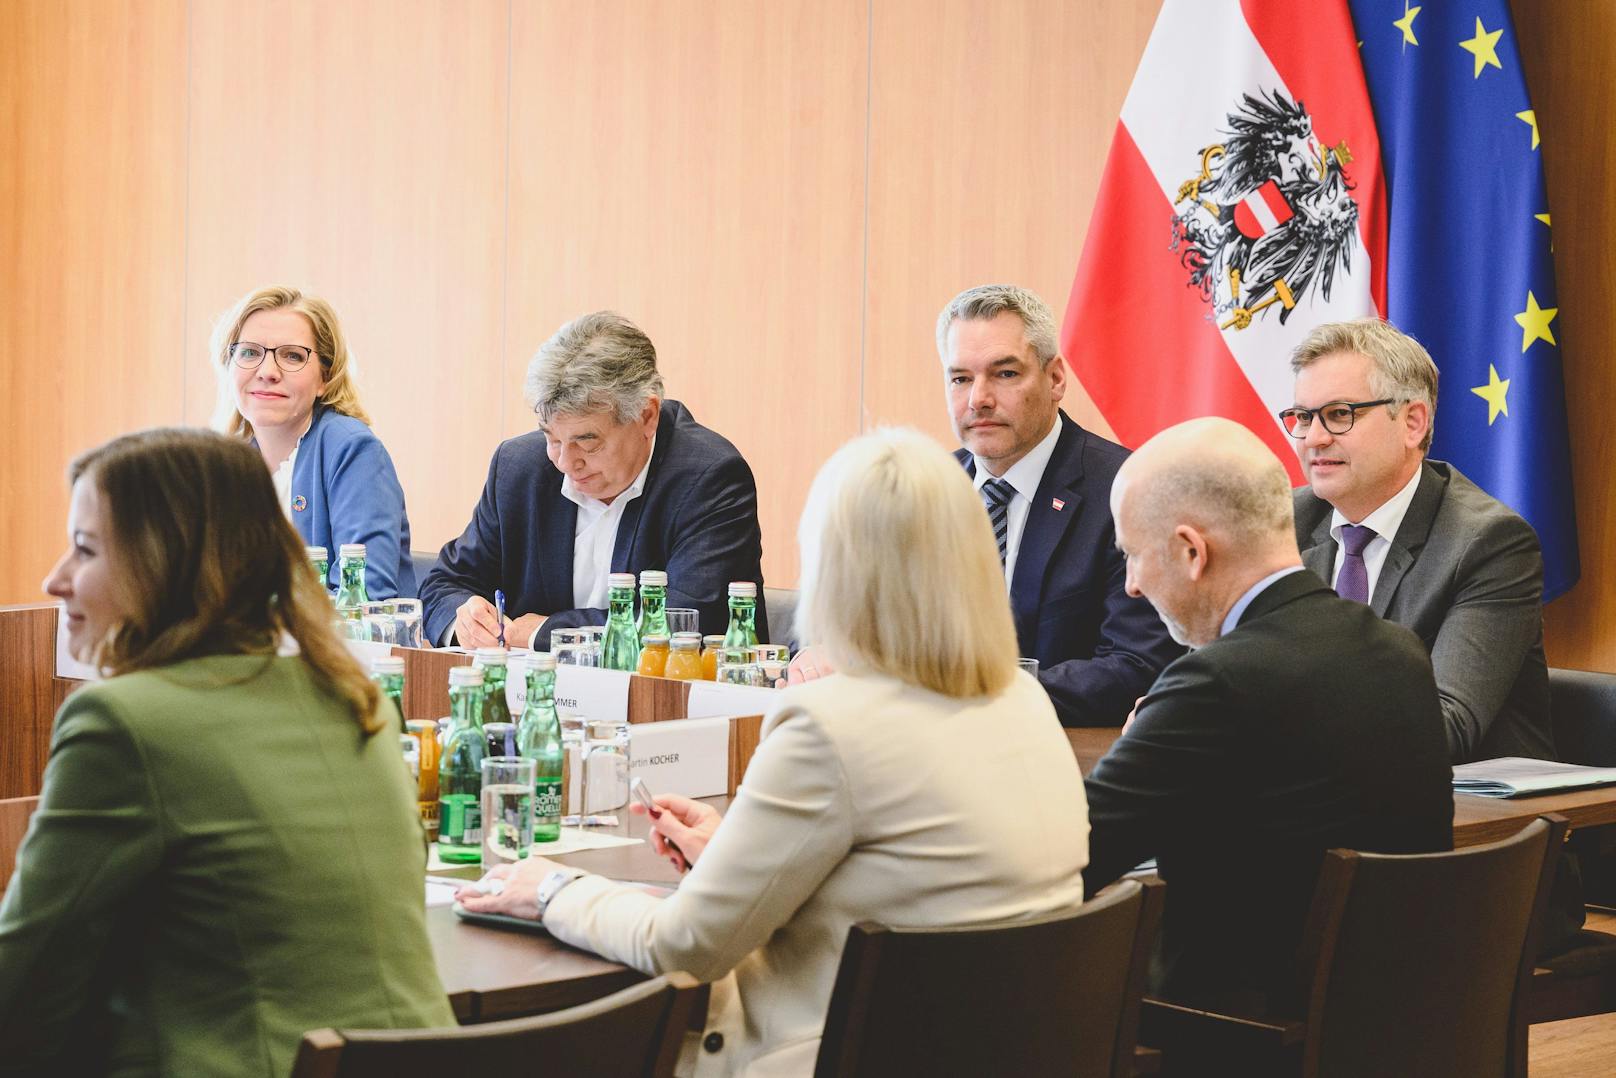 Drei große Bereiche wurden festgelegt: Erneuerbaren-Turbo für Österreich, die Stärkung von Wirtschaft und Arbeitsmarkt, sowie saubere und transparente Politik.